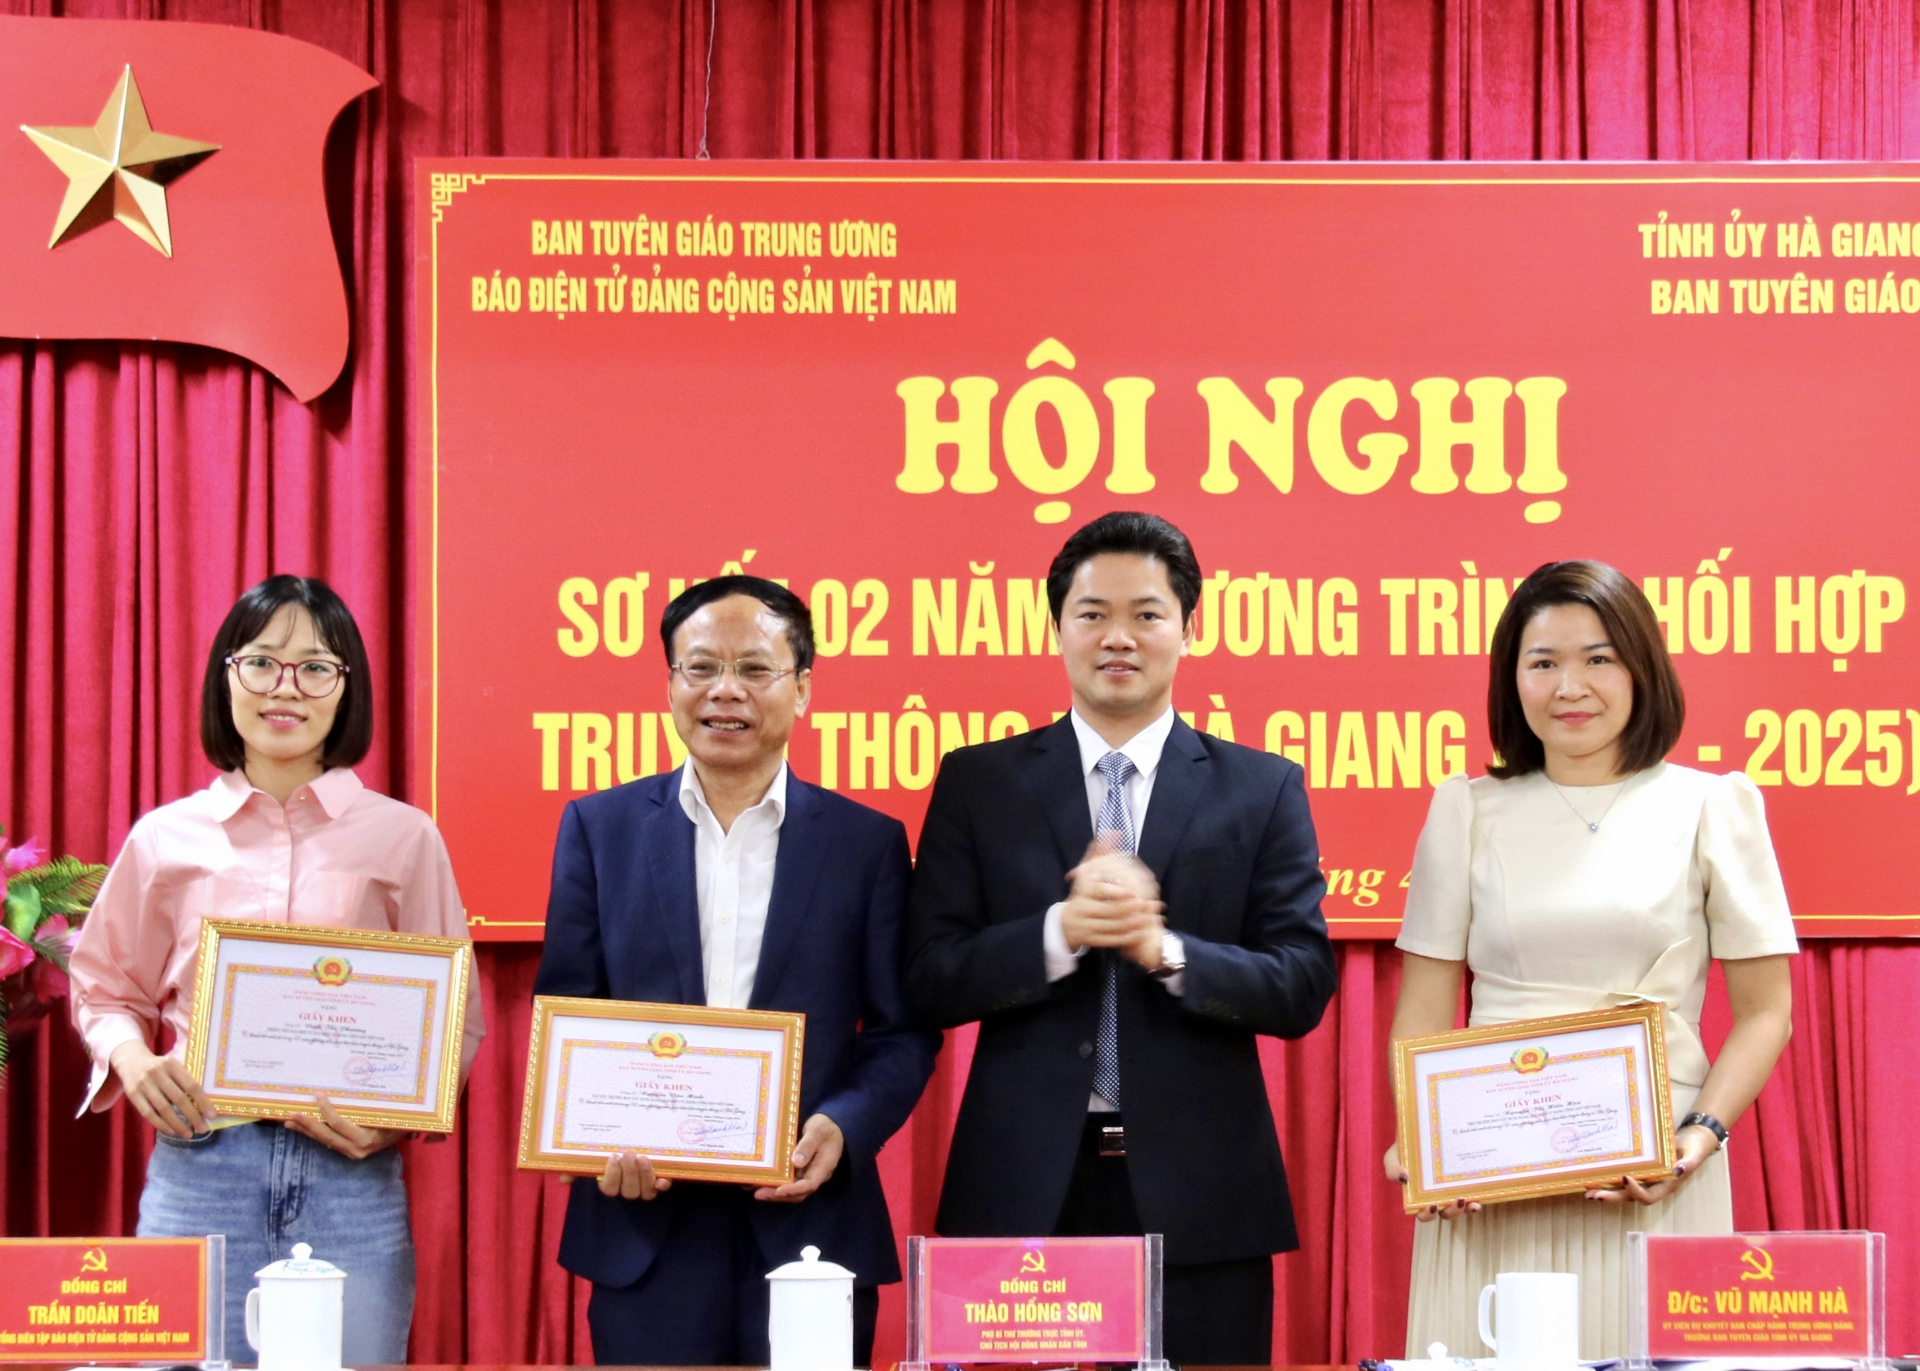 Trưởng Ban Tuyên giáo Tỉnh ủy Vũ Mạnh Hà trao Giấy khen cho 3 cá nhân Báo điện tử Đảng Cộng sản Việt Nam vì có nhiều thành tích trong công tác truyền thông về Hà Giang trong 2 năm 2021-2022